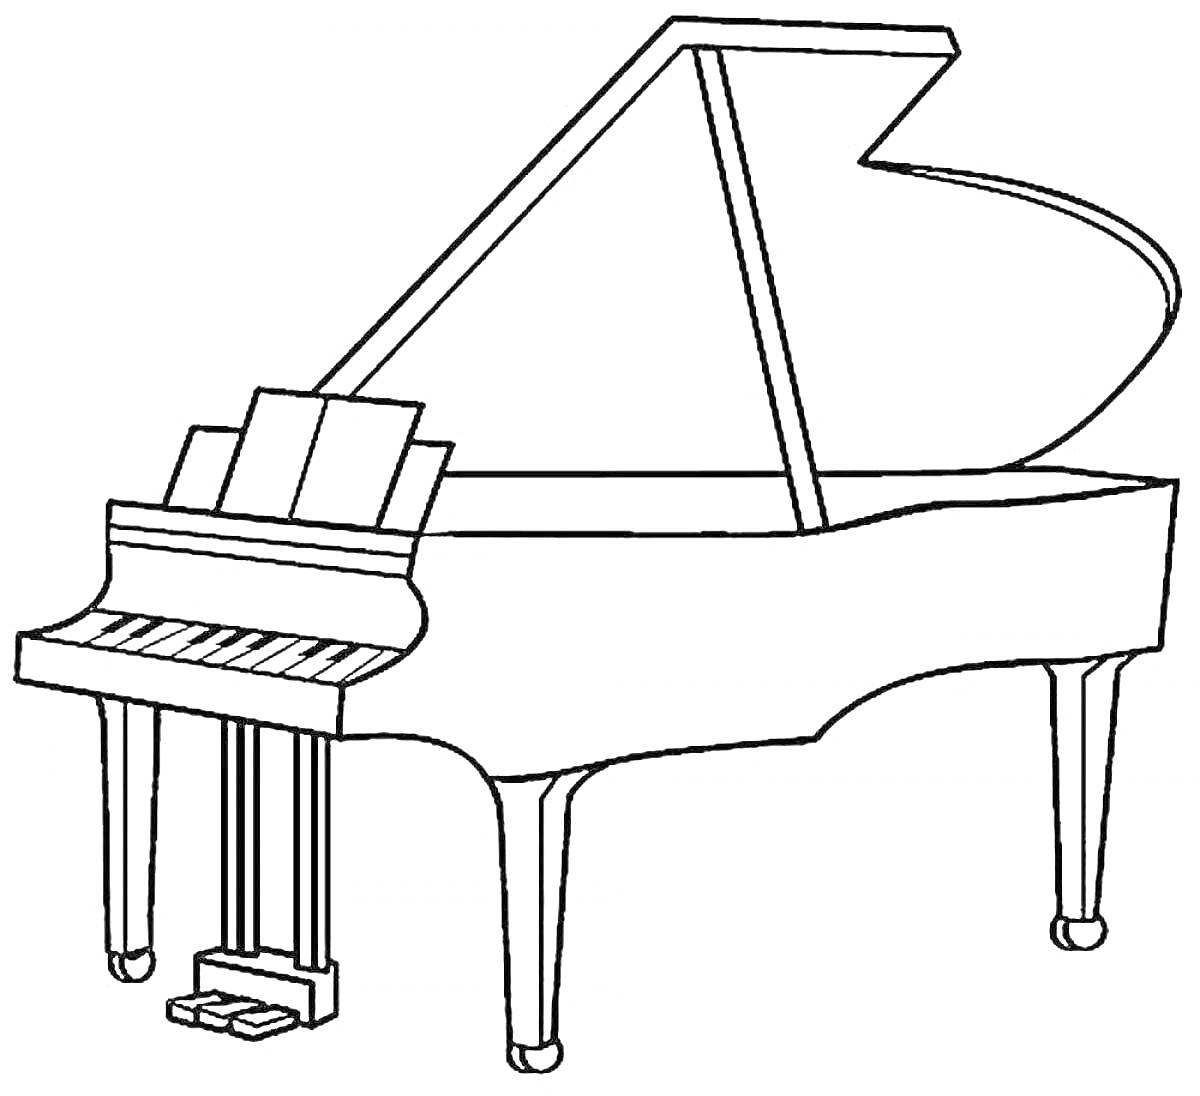 Раскраска Рояль с открытой крышкой, клавишами и педалями